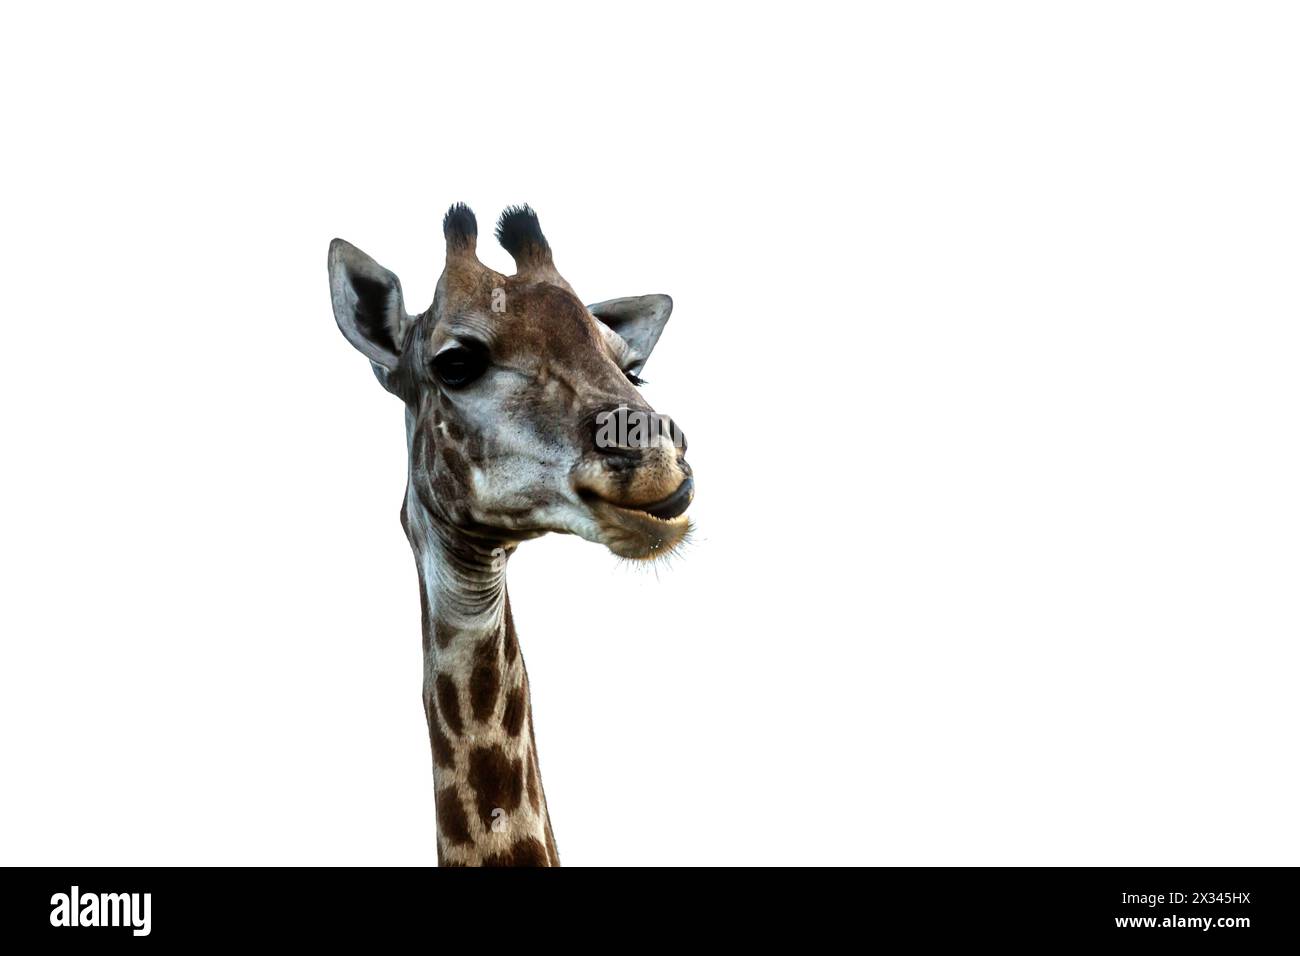 Girafe drôle portrait isolé sur fond blanc dans le parc national Kruger, Afrique du Sud ; espèce Giraffa camelopardalis famille des Giraffidae Banque D'Images